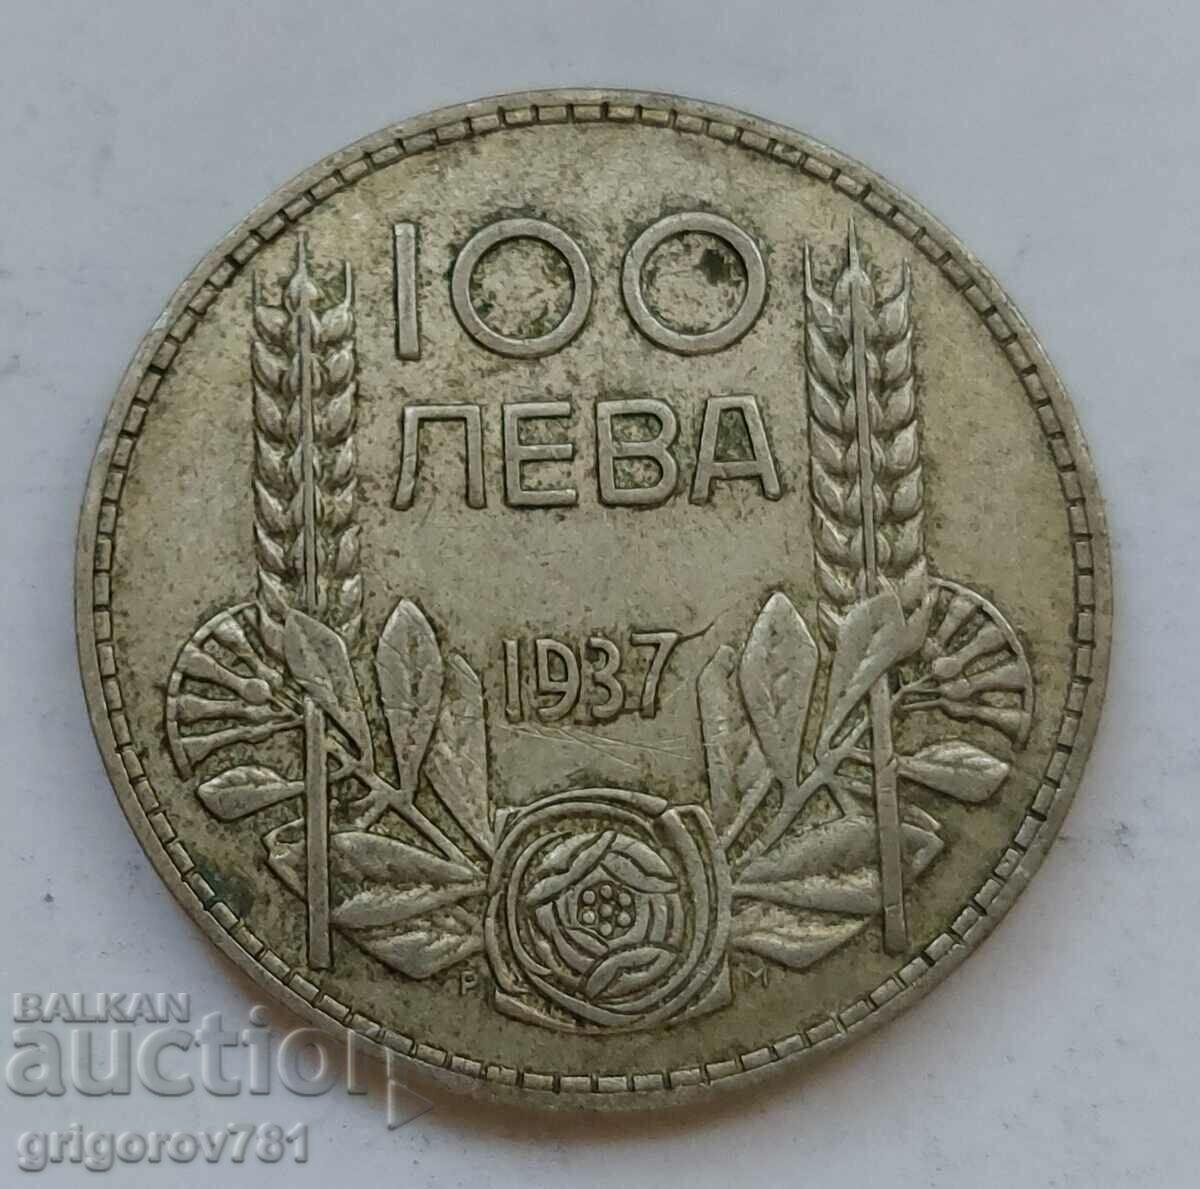 100 leva argint Bulgaria 1937 - monedă de argint #137